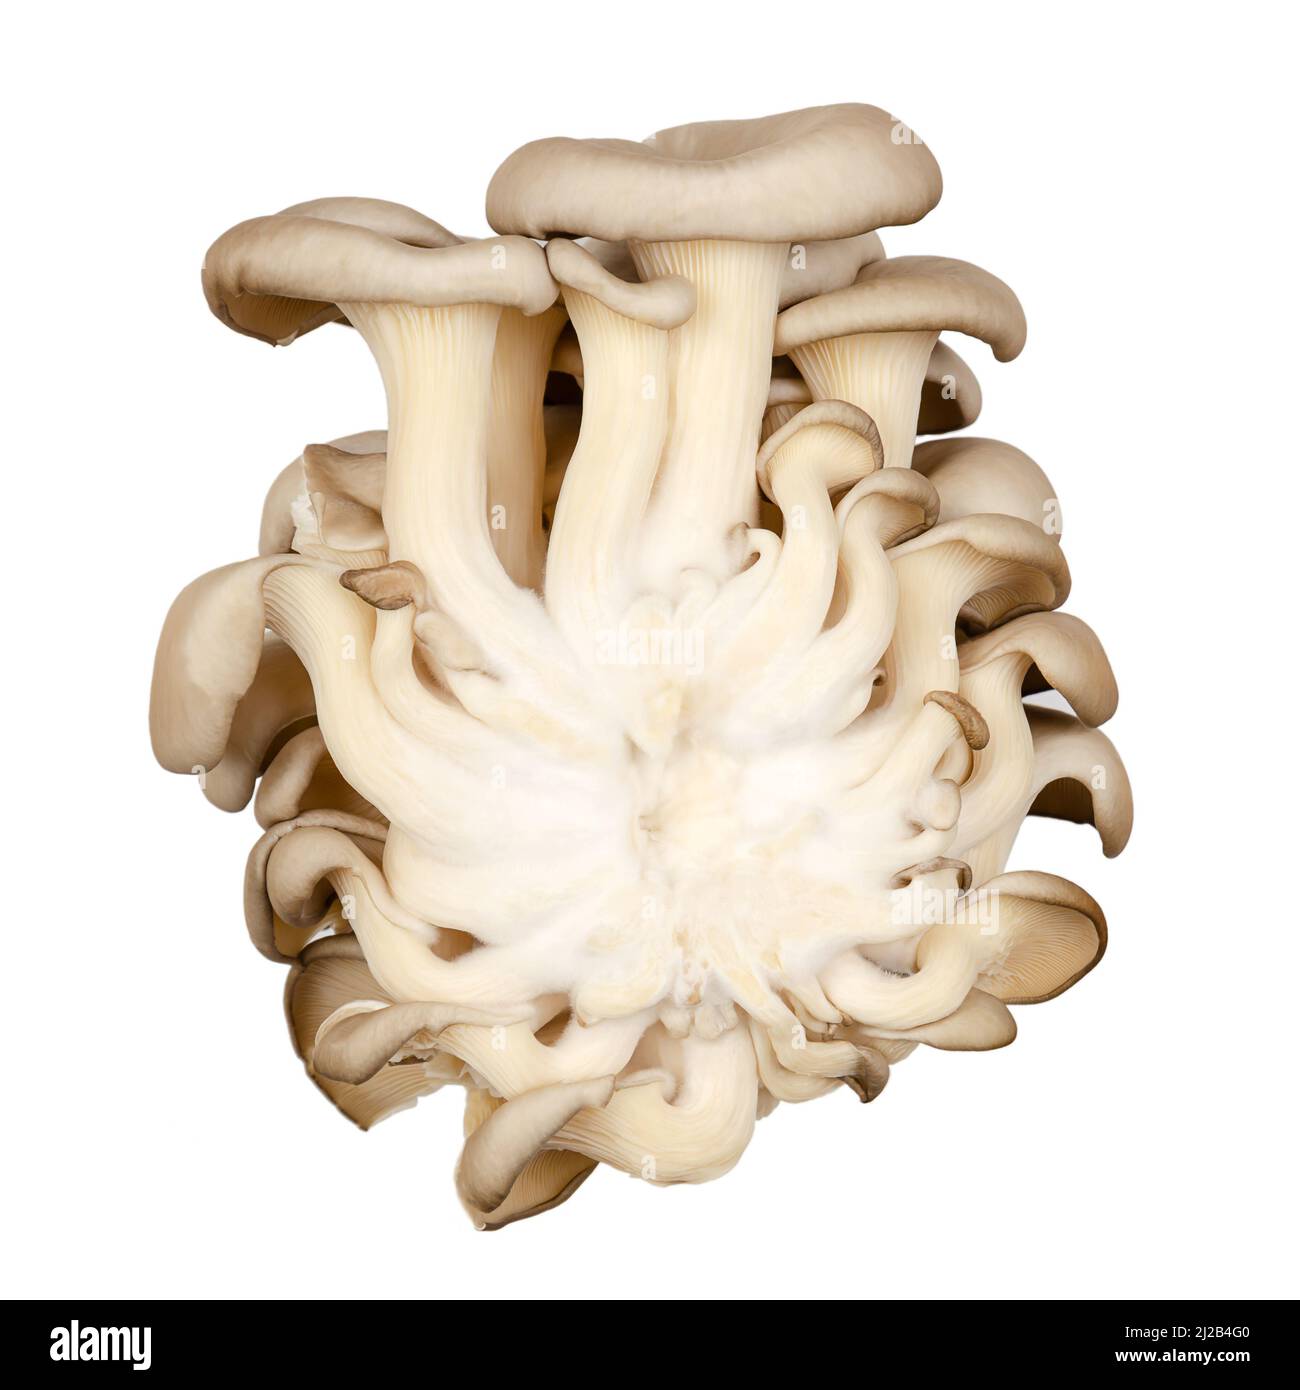 Cluster frischer Austernpilze, Rückansicht. Pleurotus, auch als Abalone- oder Baumpilze bekannt. Einer der am meisten kultivierten Pilze. Stockfoto